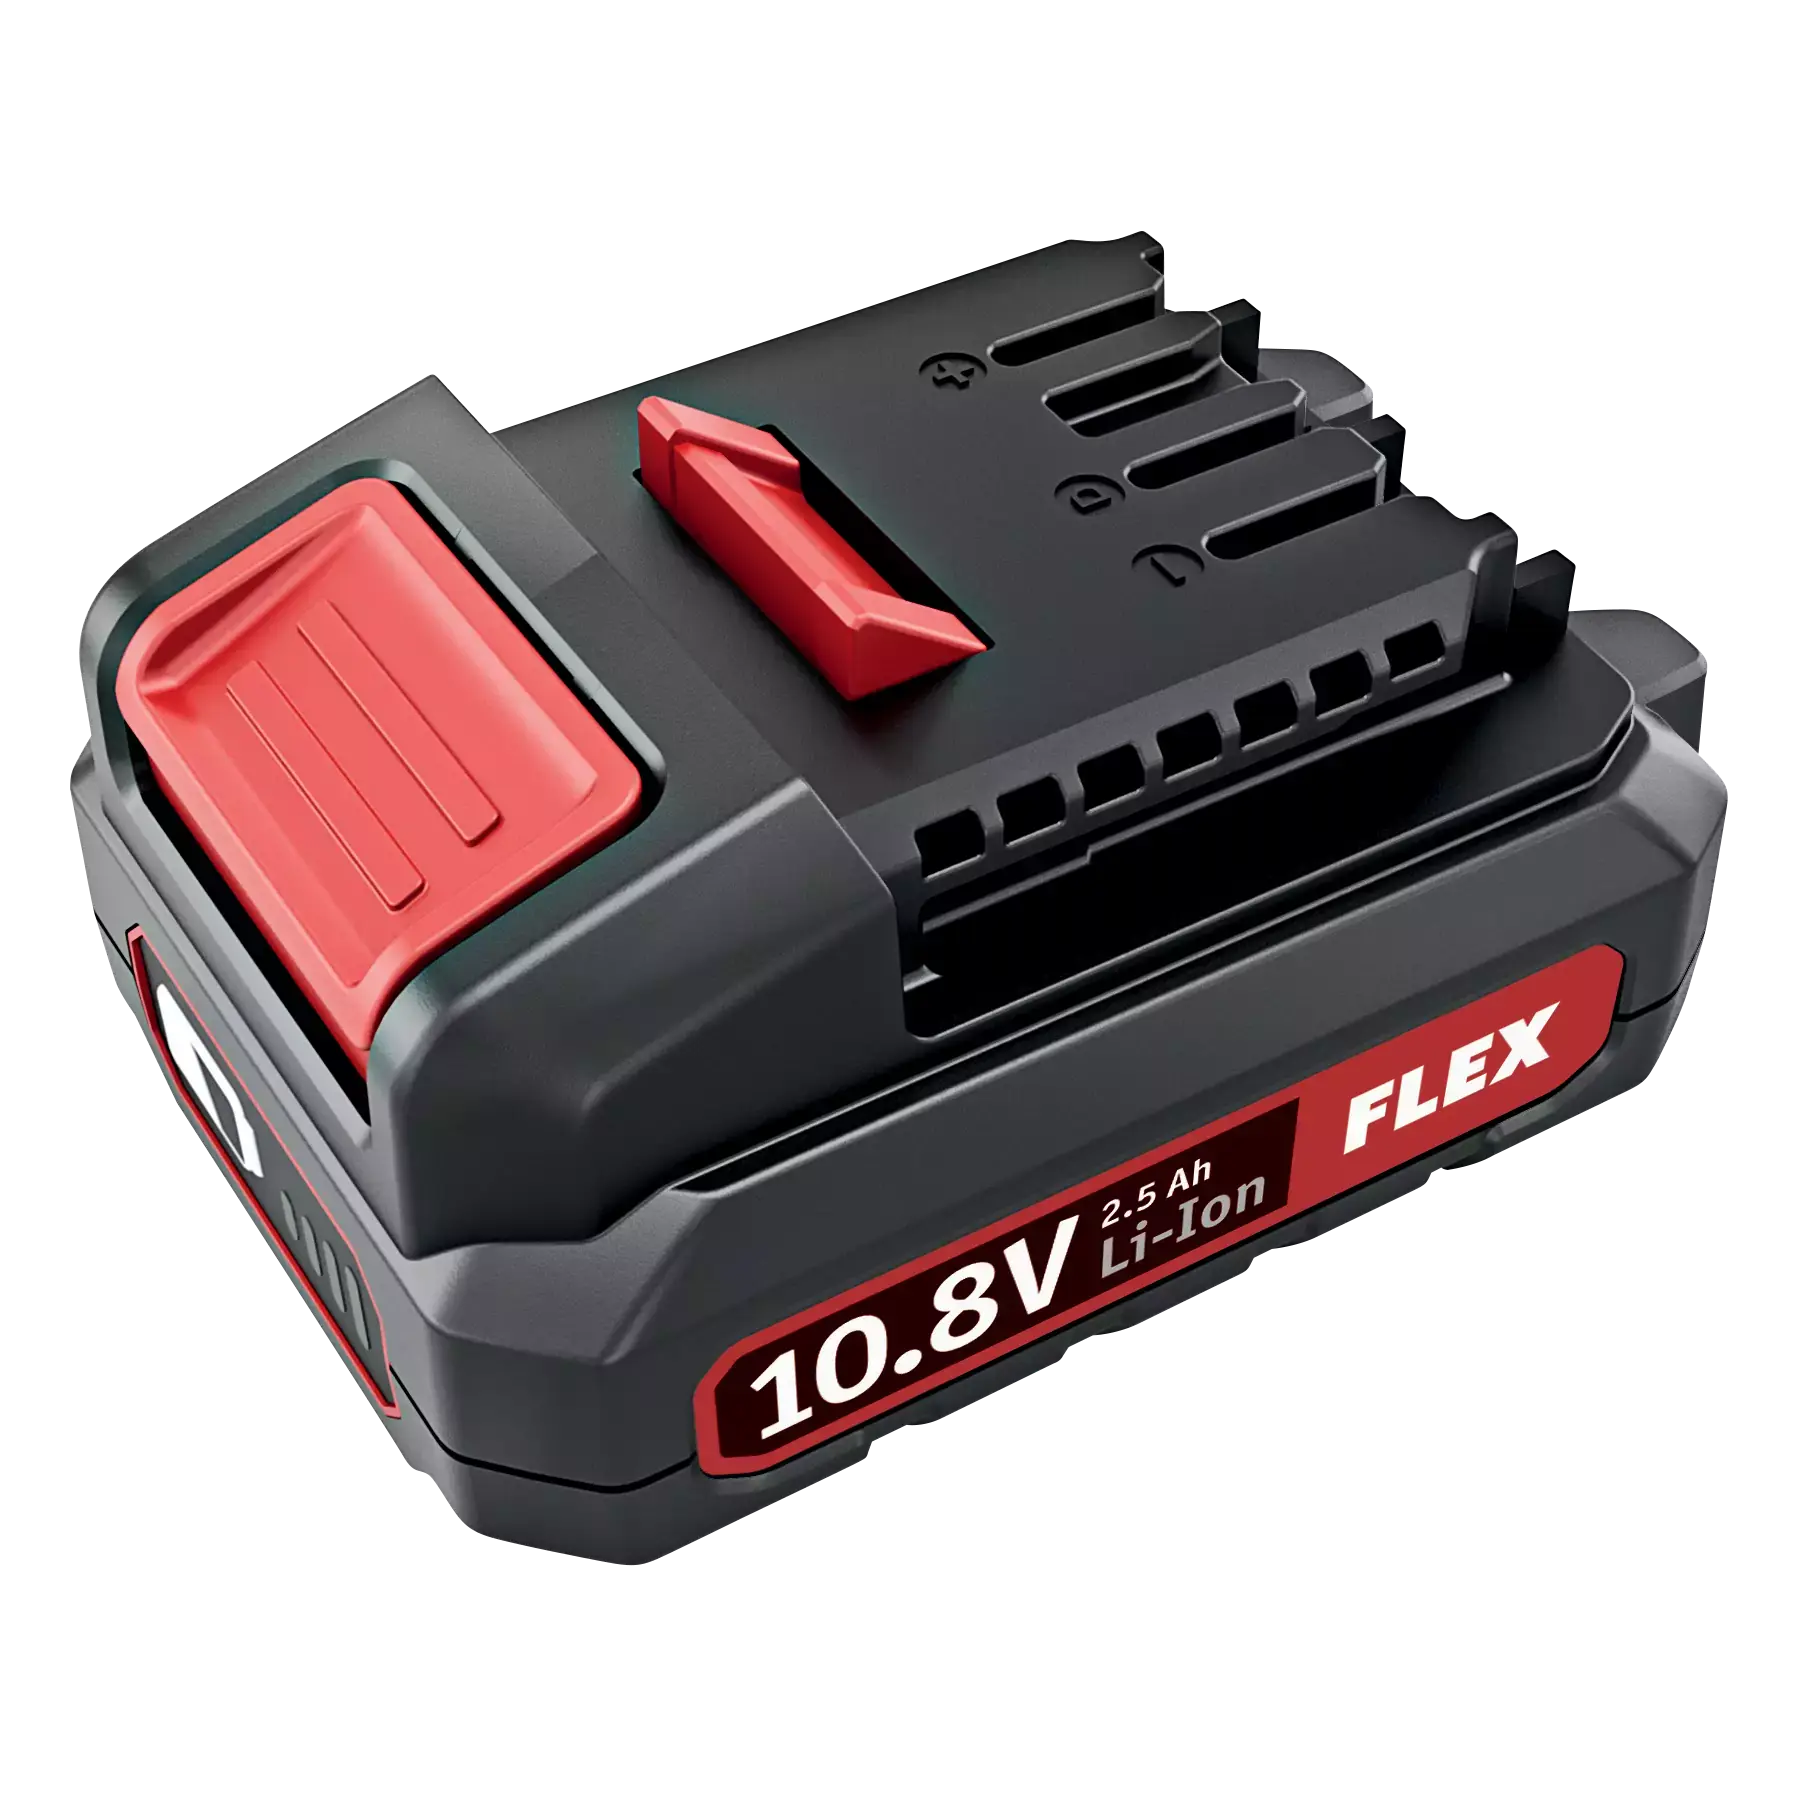 Flex Li-Ion Rechargeable Battery Pack AP 10.8/2.5 Ah